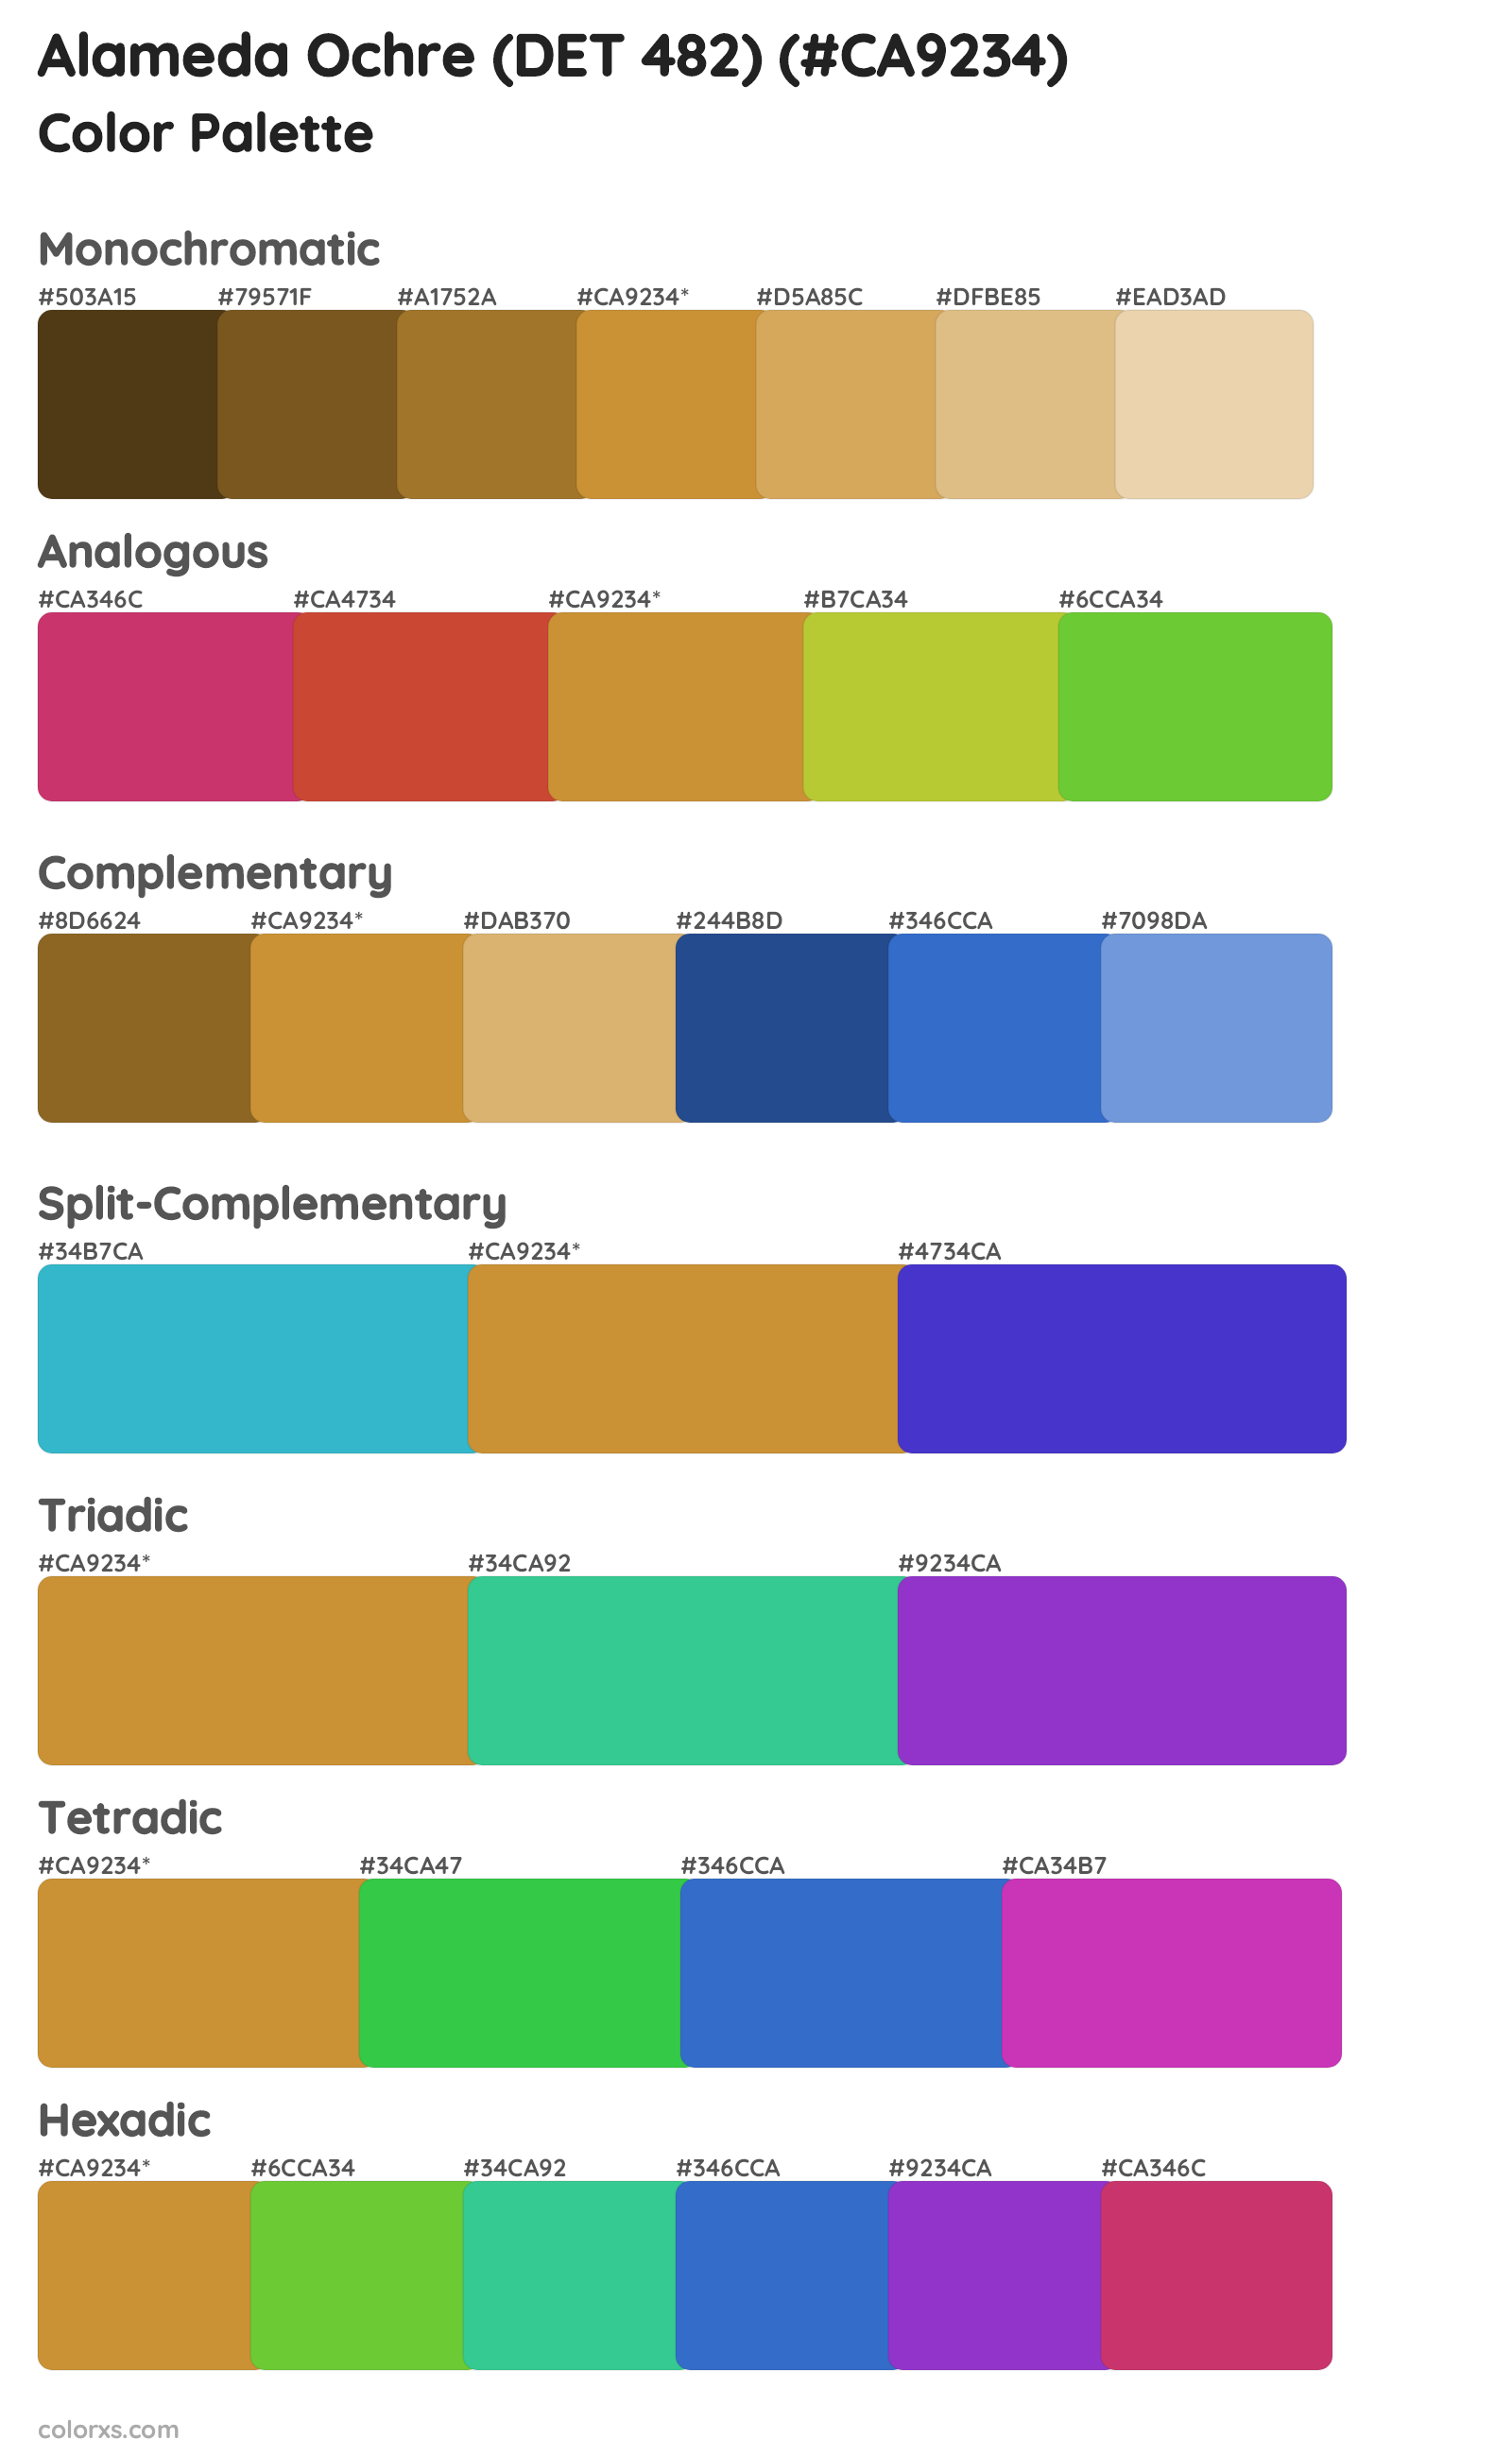 Alameda Ochre (DET 482) Color Scheme Palettes